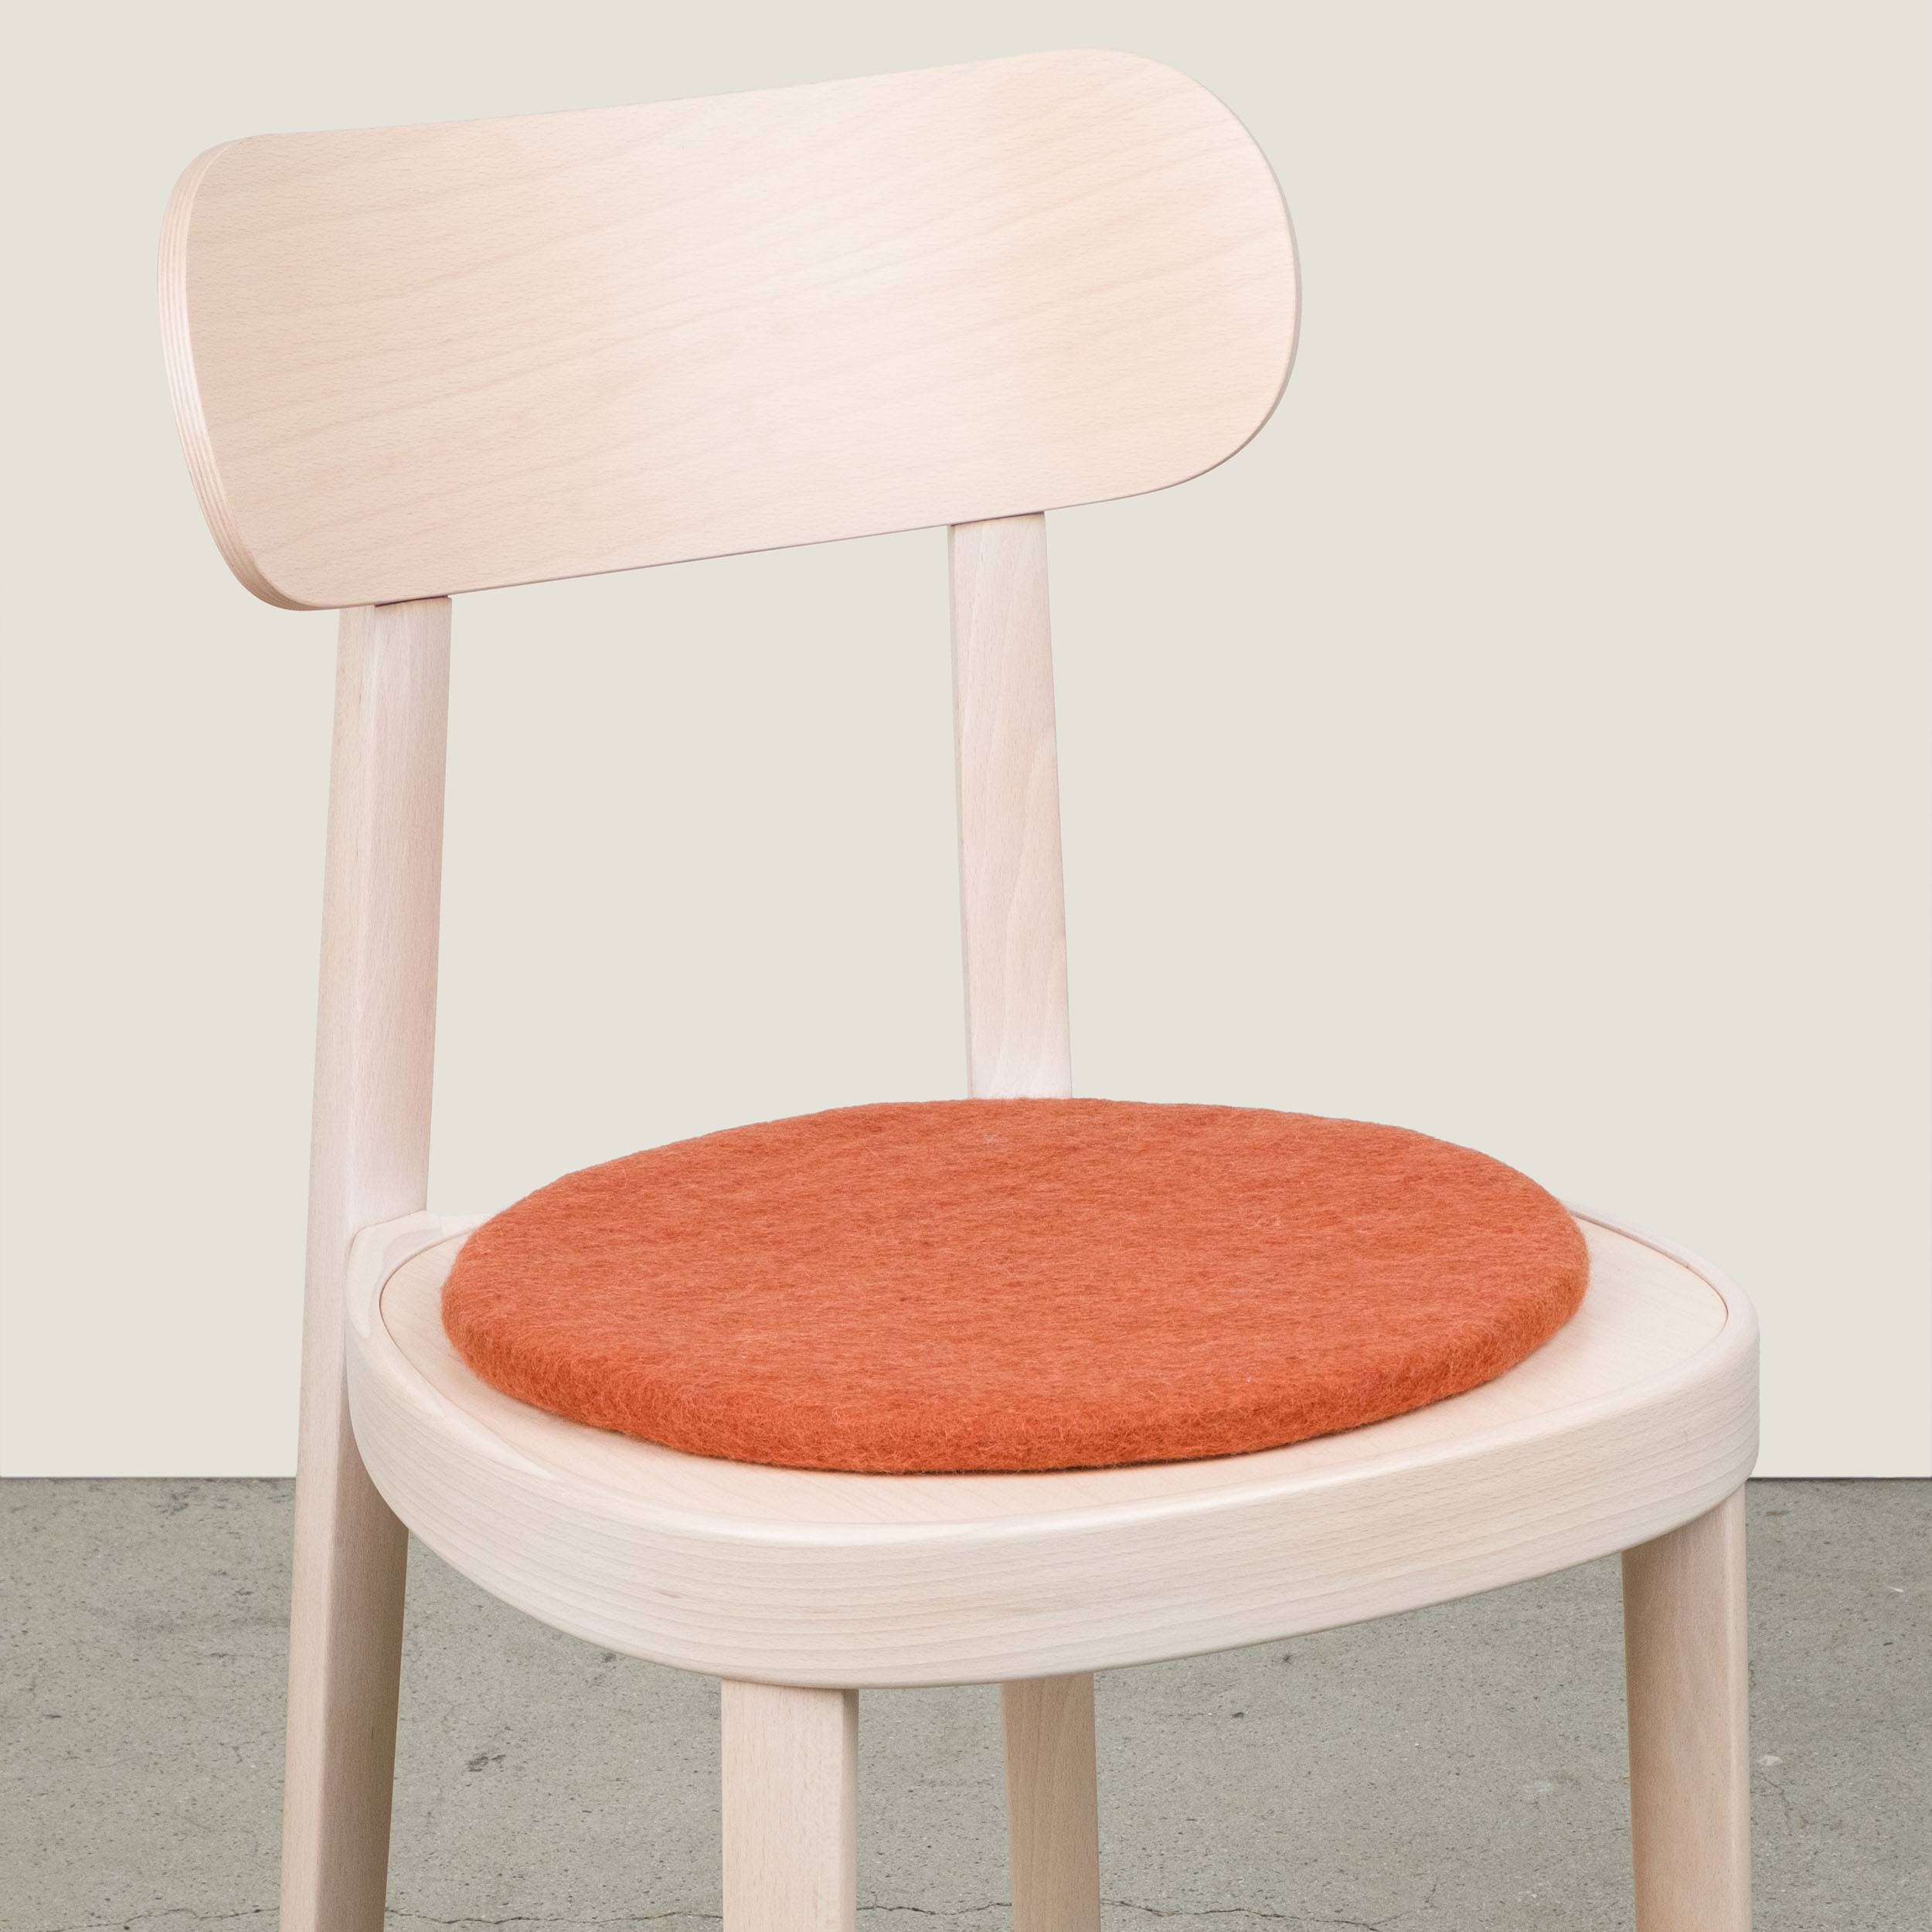 Flat Sitzauflage von myfelt im ikarus…design shop